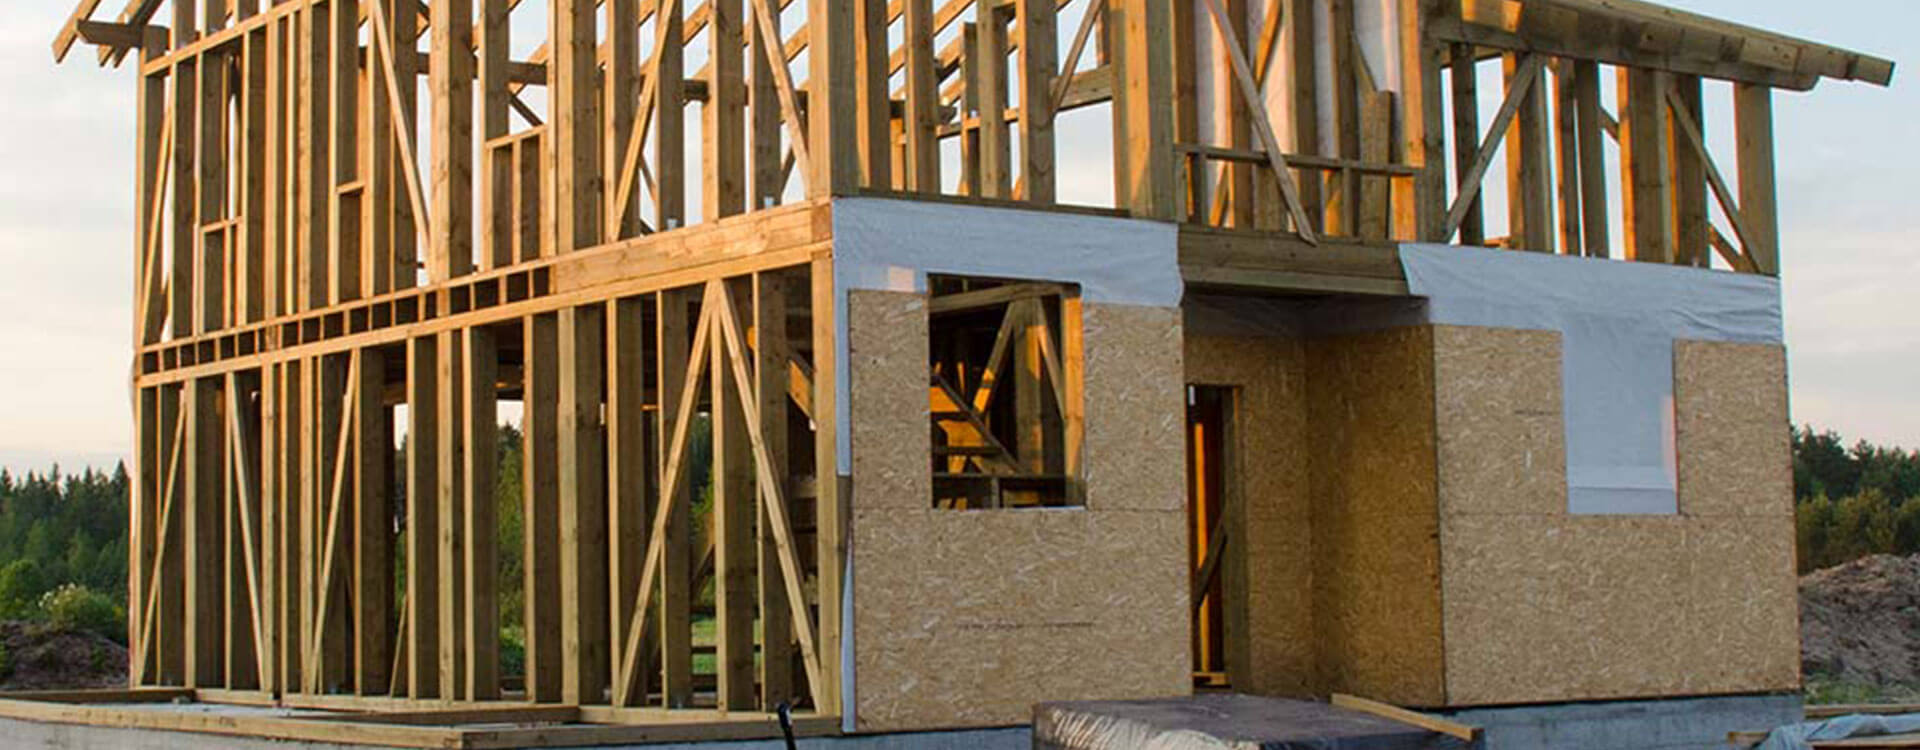 Woodbridge General Contractor, Home Remodeling Contractor and Kitchen Remodeling Contractor